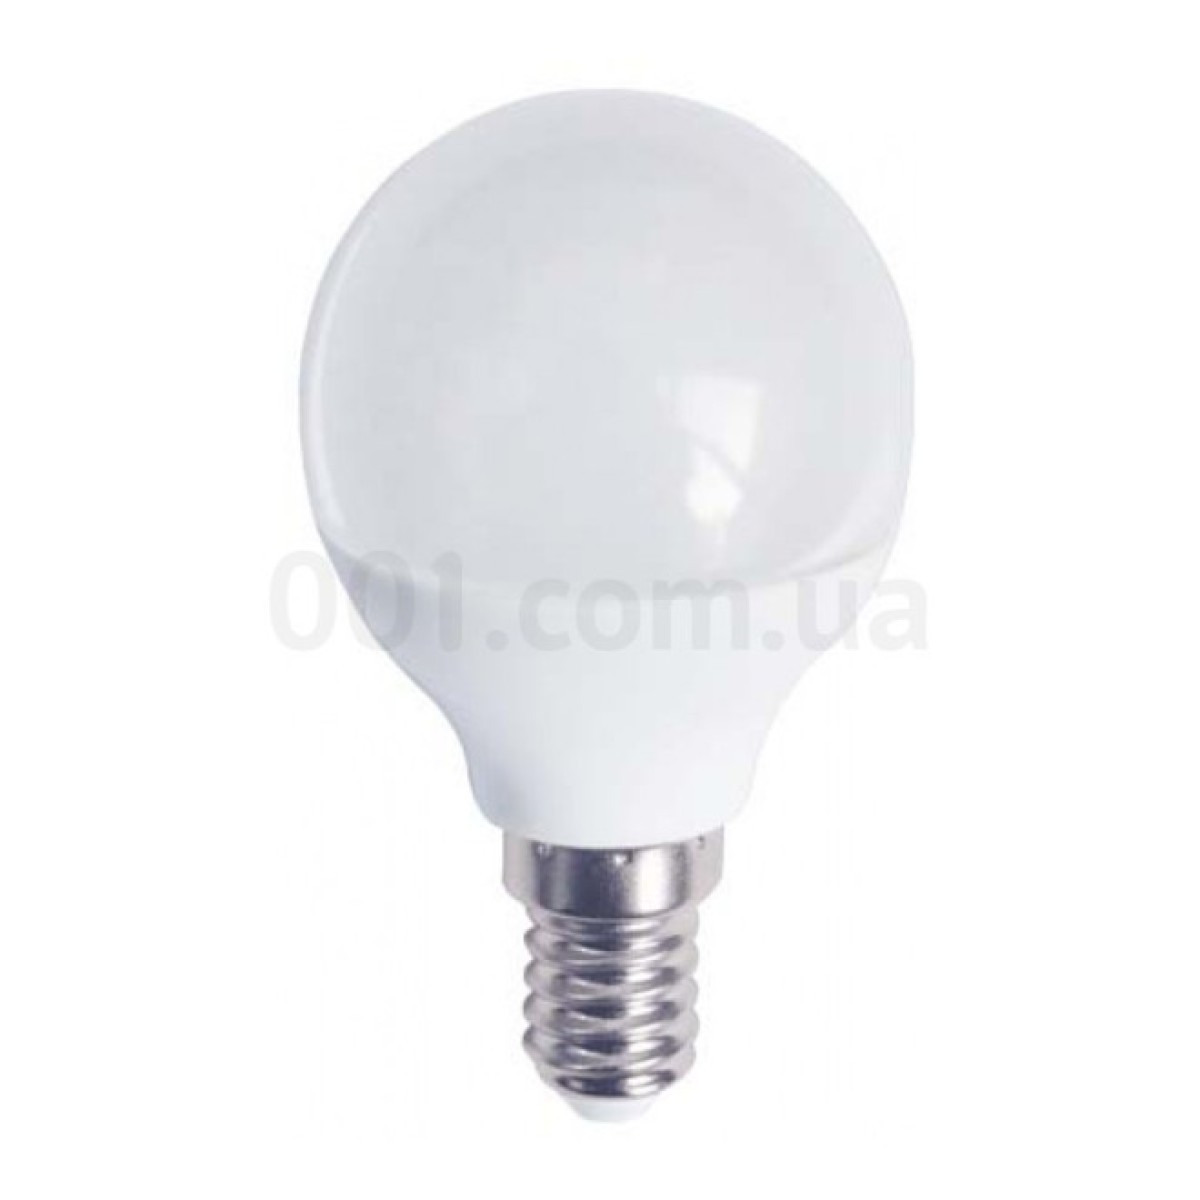 Світлодіодна лампа LB-745 P45 (куля) 6Вт 6400K E14, Feron 256_256.jpg